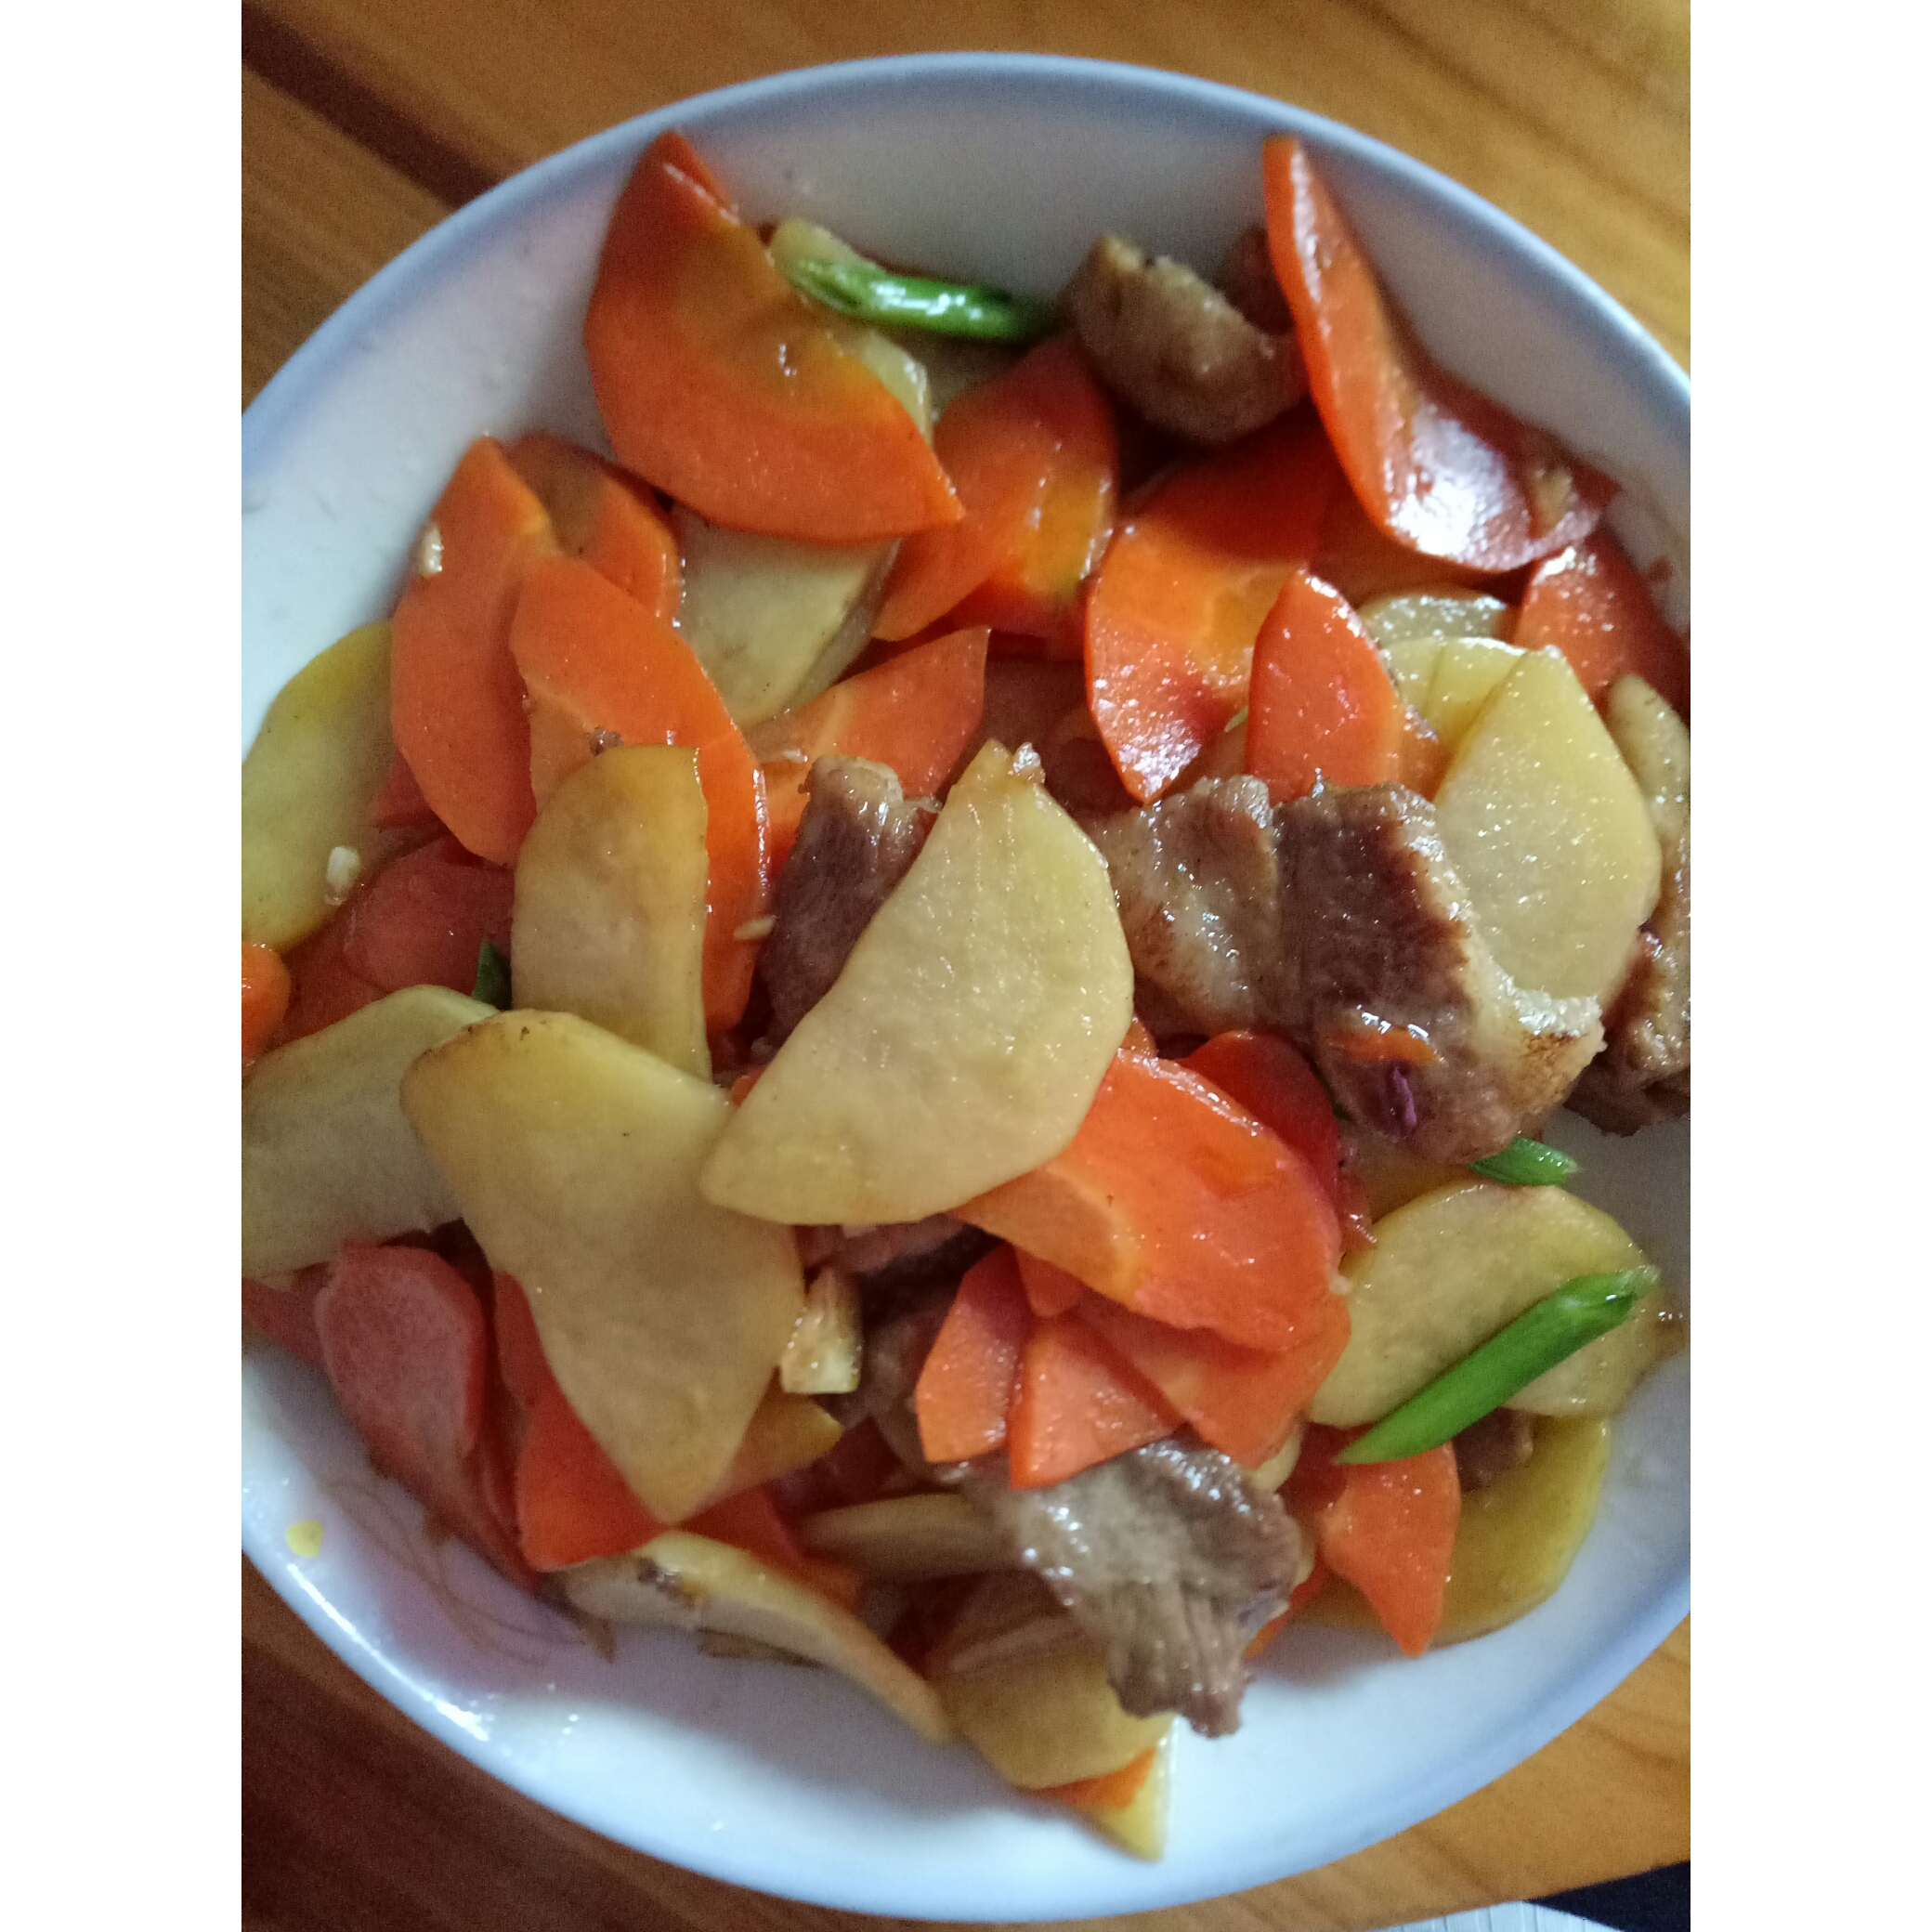 青椒胡萝卜土豆片